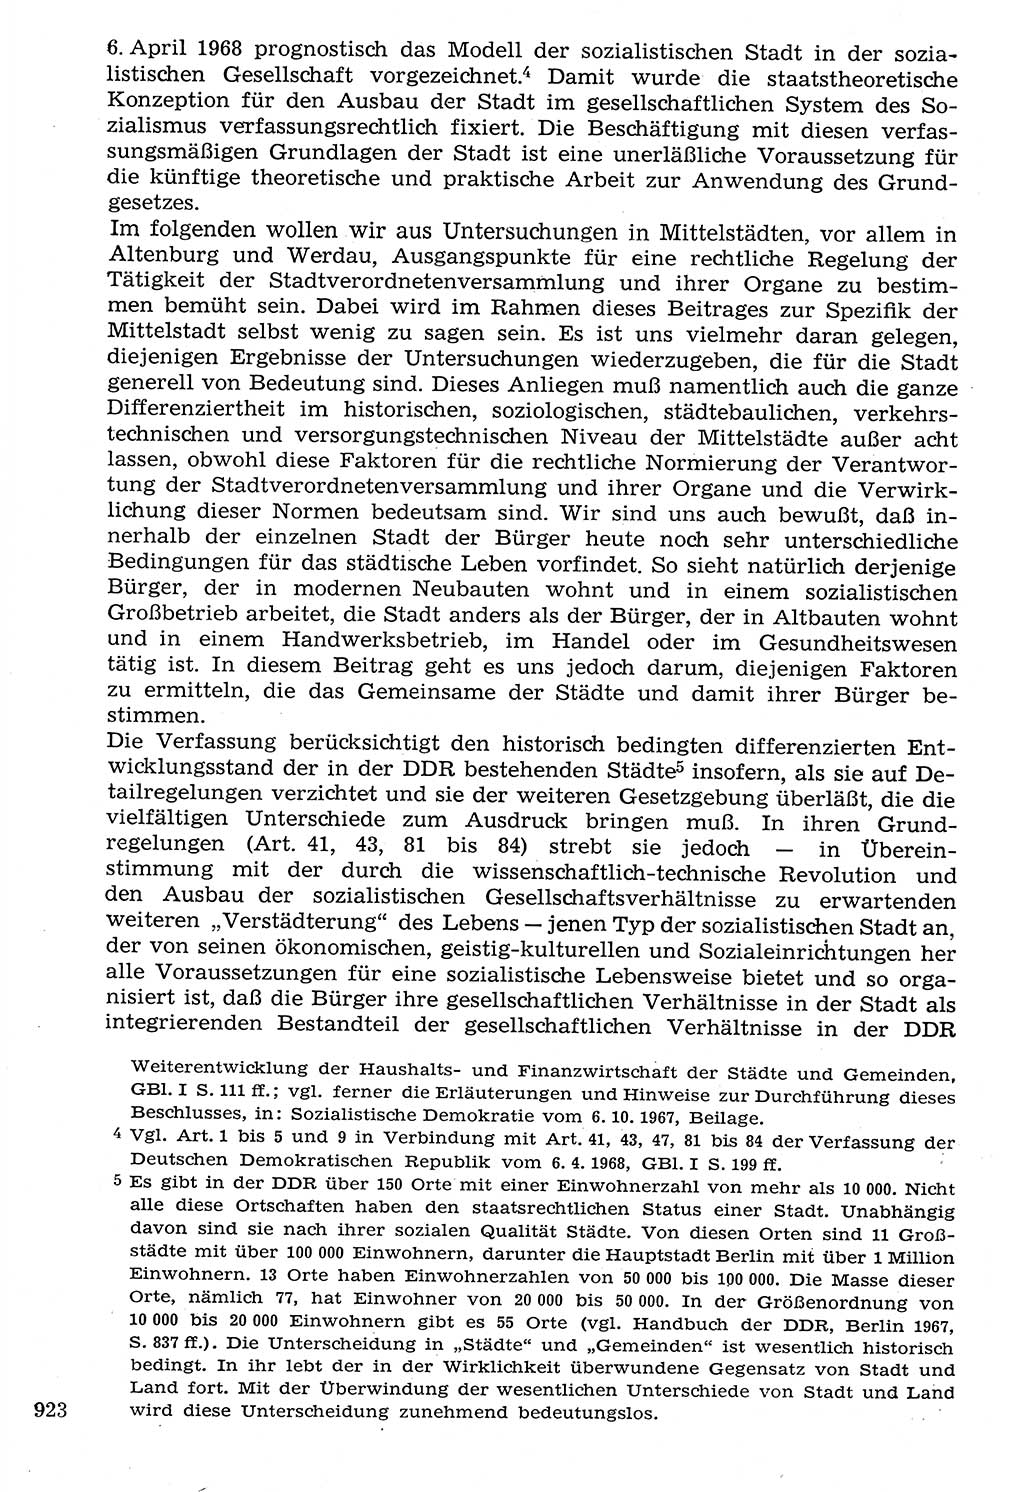 Staat und Recht (StuR), 17. Jahrgang [Deutsche Demokratische Republik (DDR)] 1968, Seite 923 (StuR DDR 1968, S. 923)